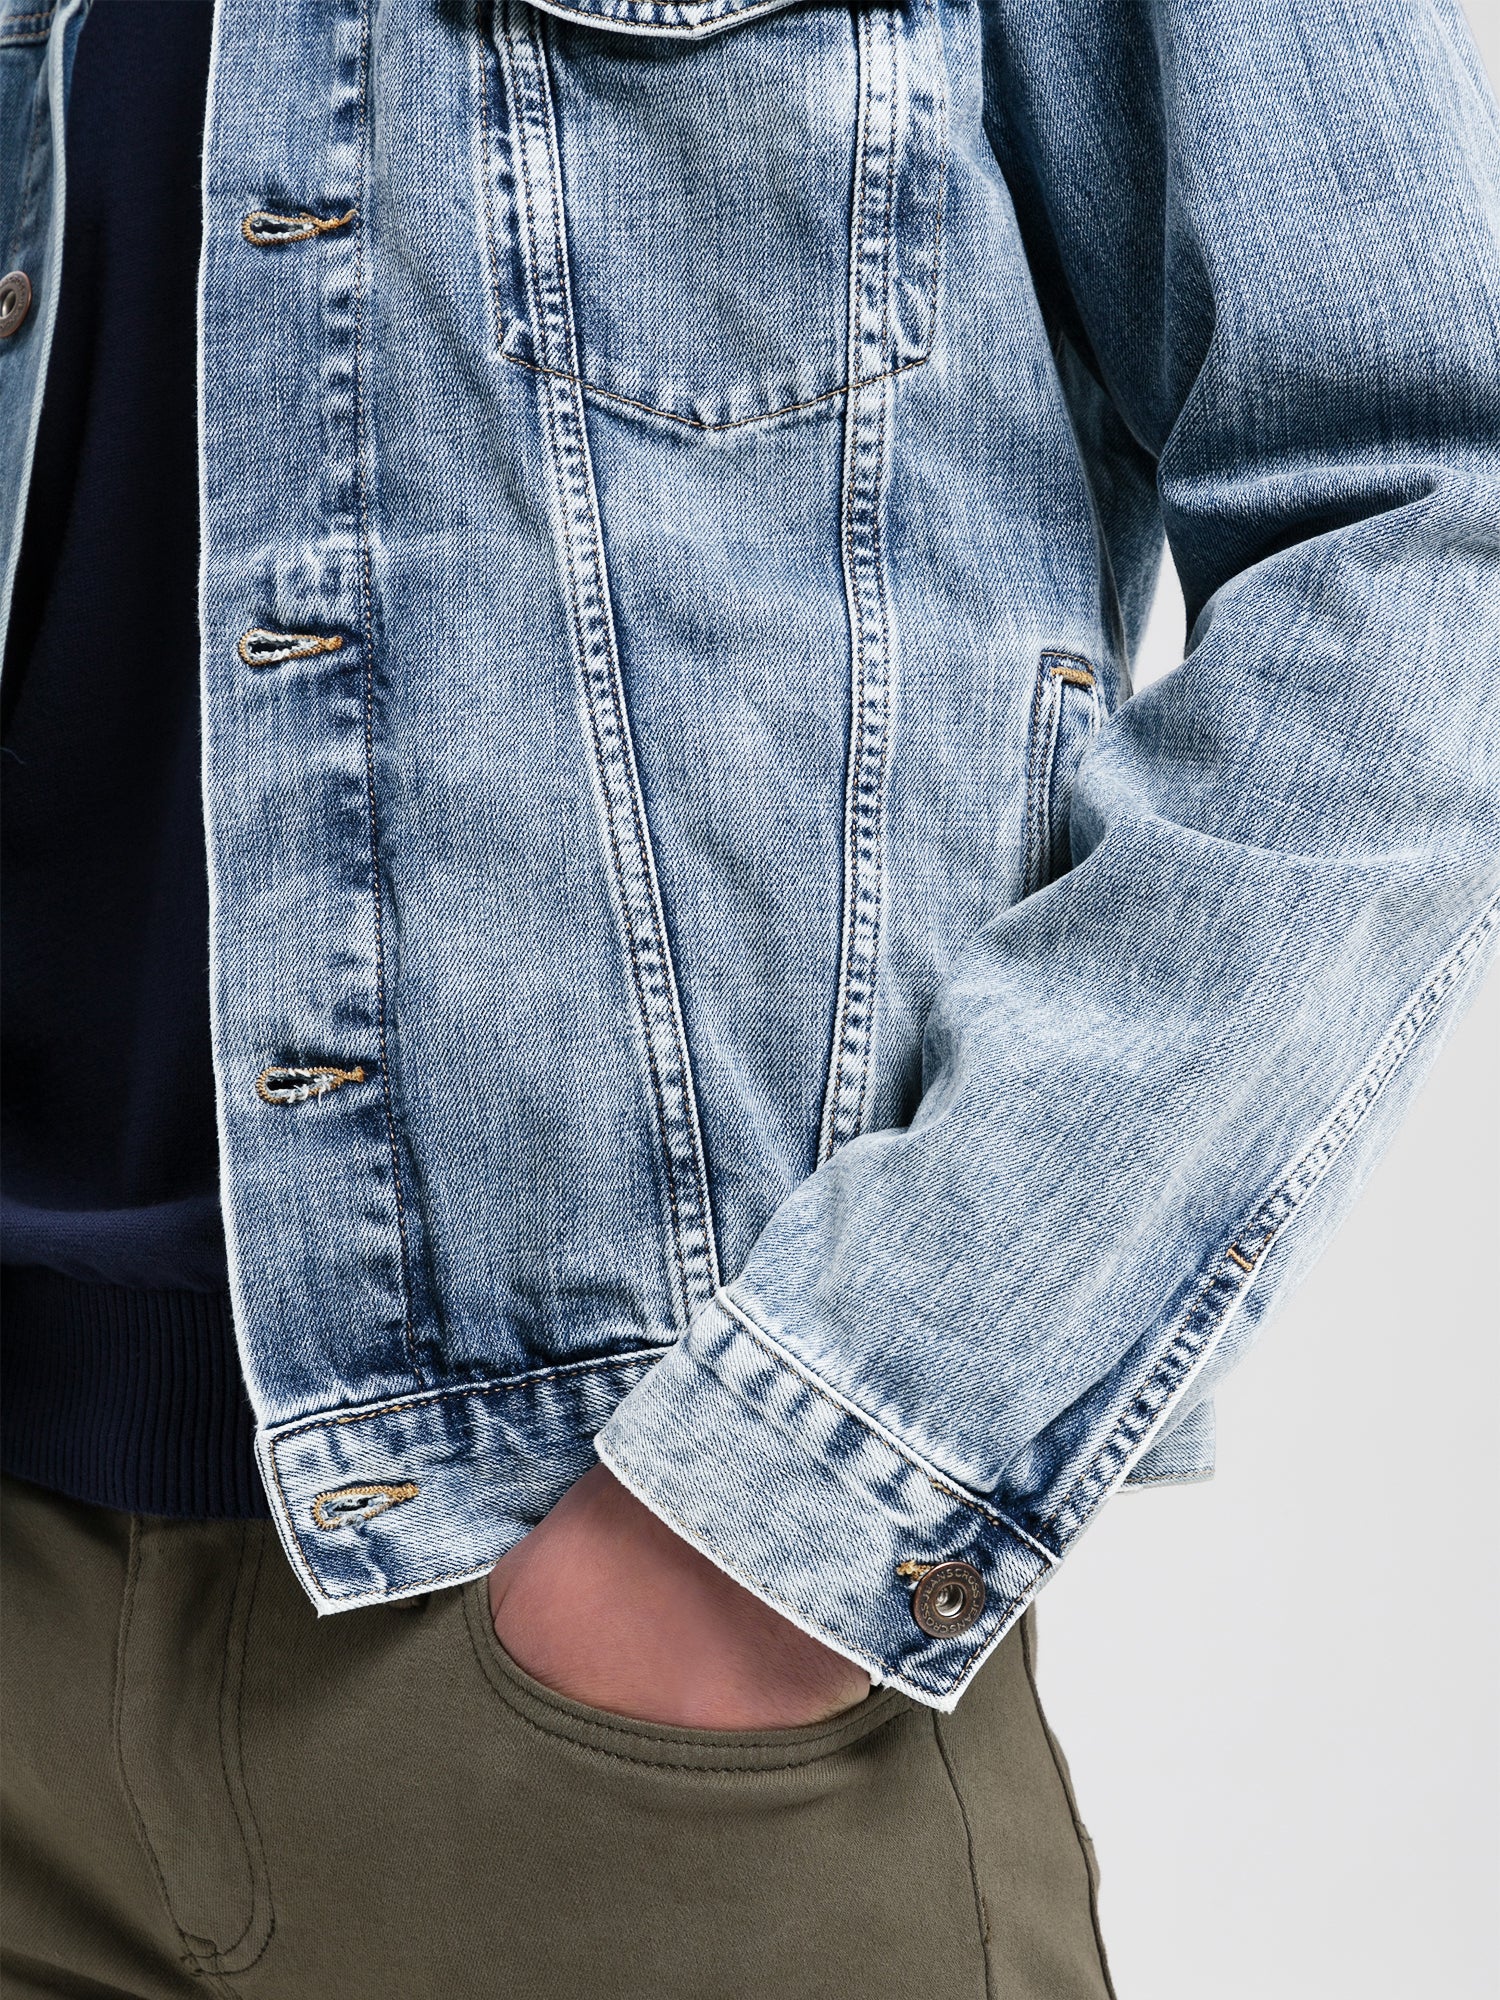 Cross | Regular Jeans Jacket | 040 DARK MID BLUE